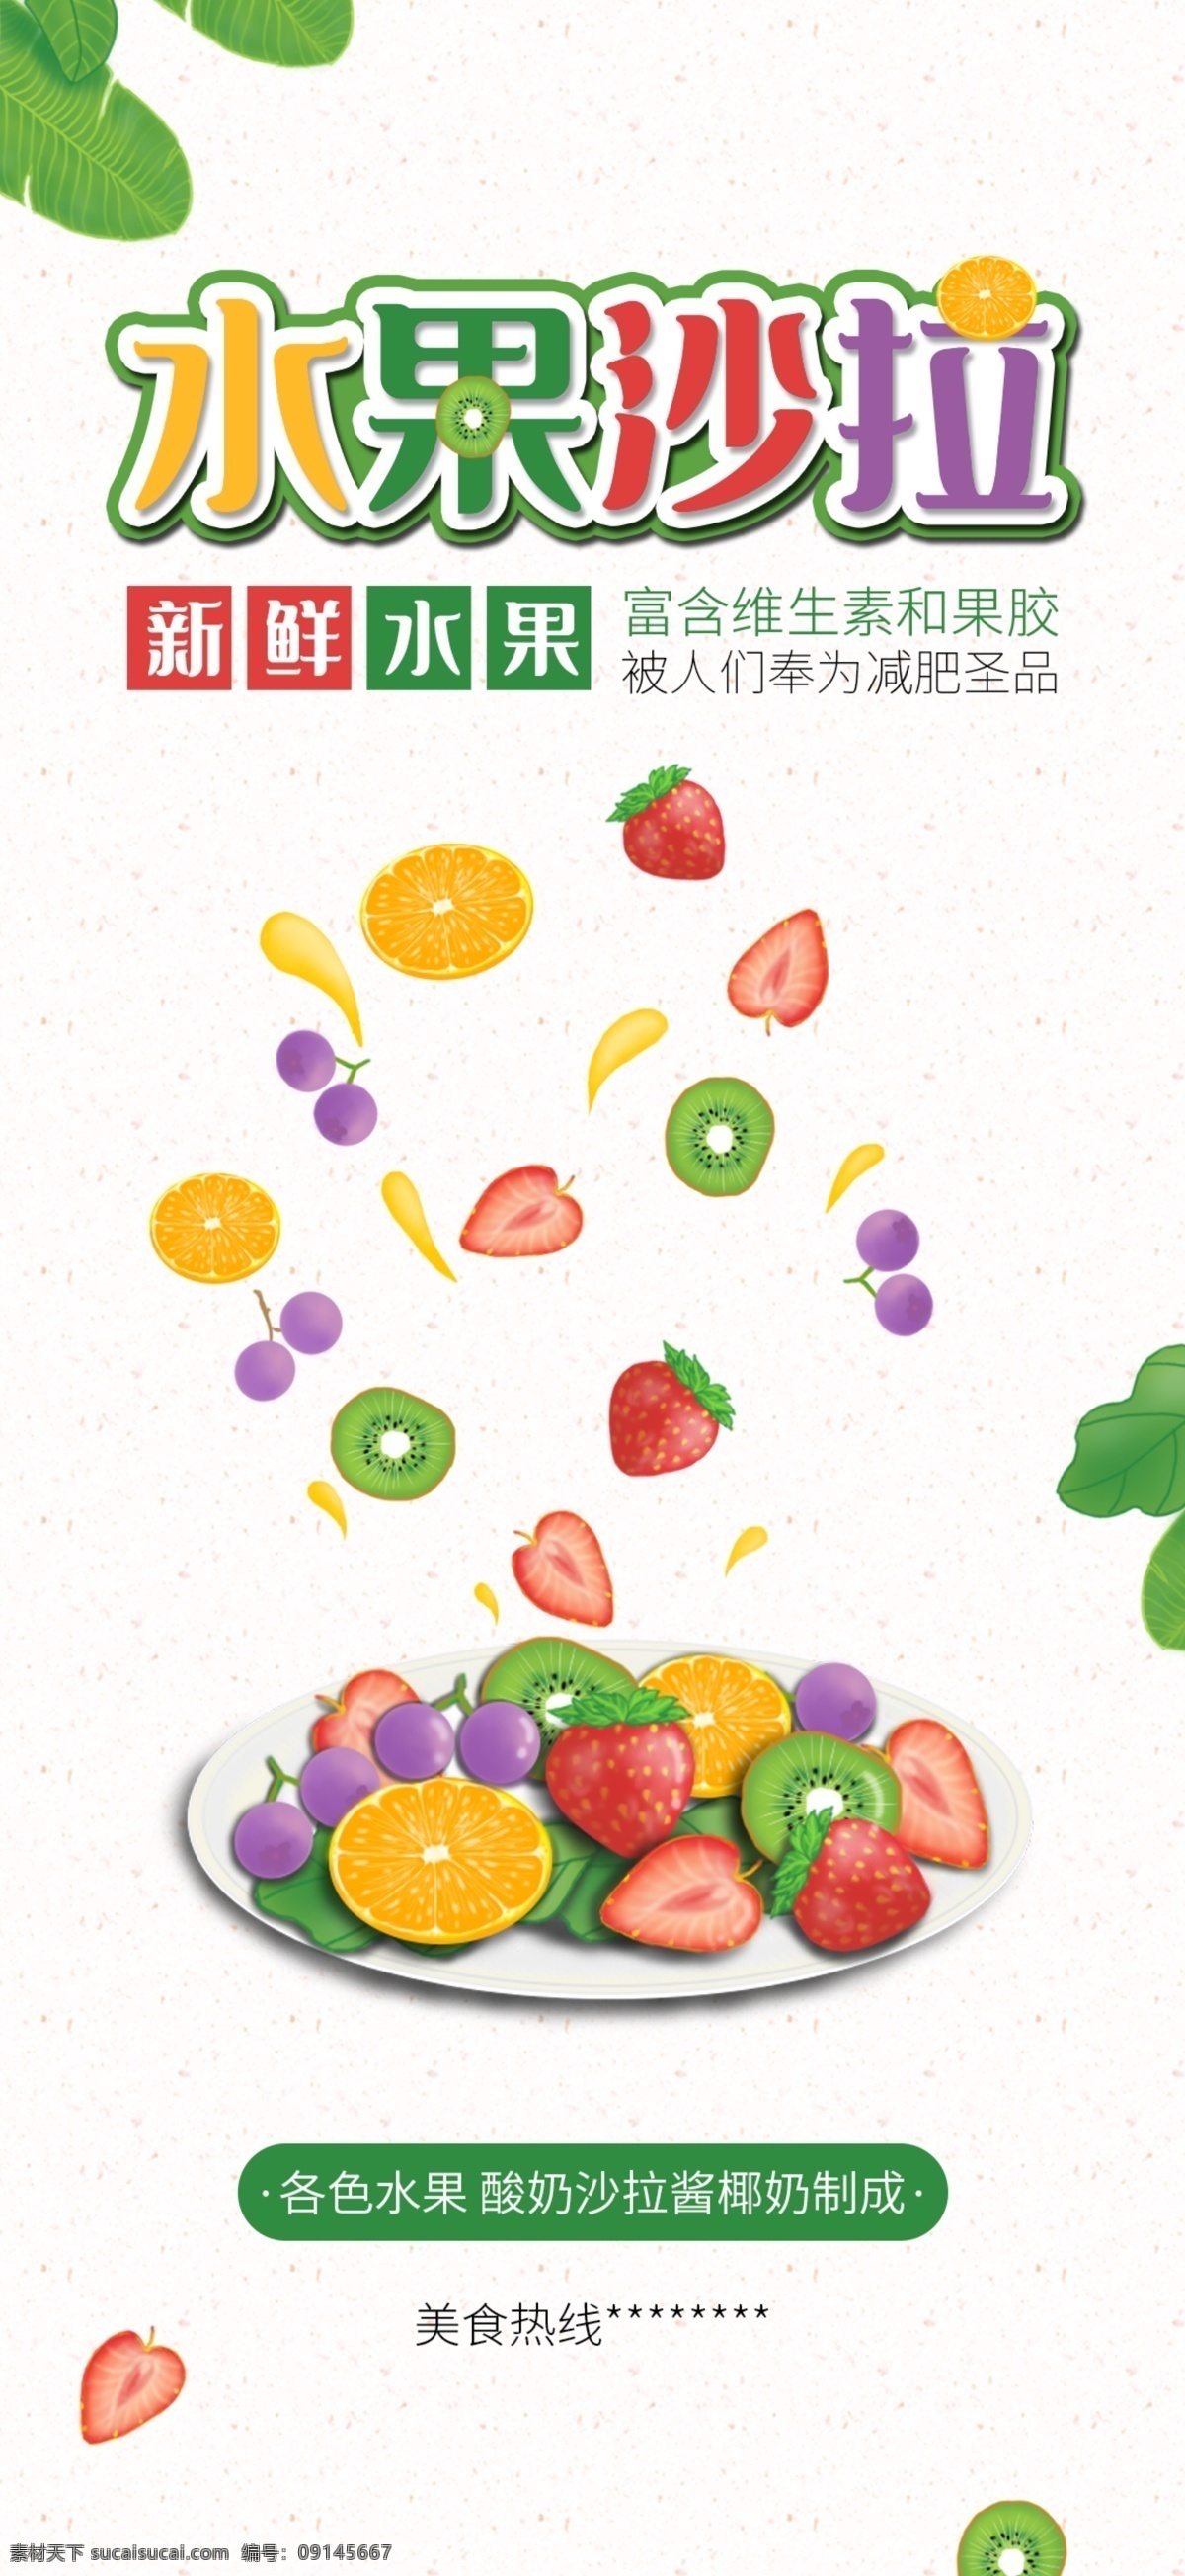 水果 沙拉 手机 海报 手机海报 鲜果 手绘 绘画 简约 简单 清爽 优惠 促销 外卖 外送 外卖海报 新鲜水果 健康 营养 果蔬行业 分层